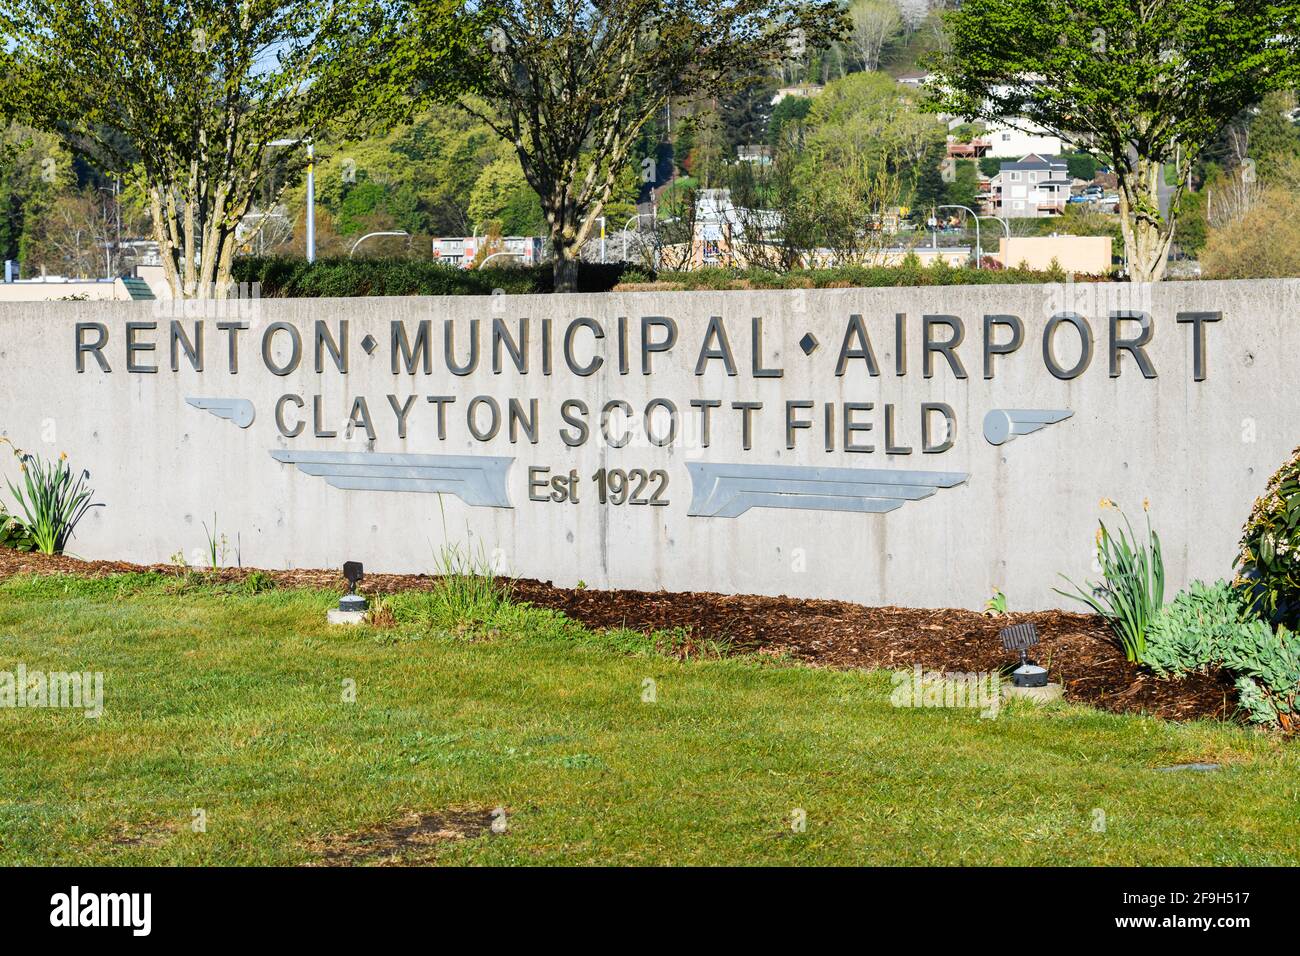 Panneau d'entrée de l'aéroport municipal de Renton, Clayton Scott Field, établi en 1922 à l'extrémité sud du lac Washington et abritant l'usine Boeing 737 Banque D'Images